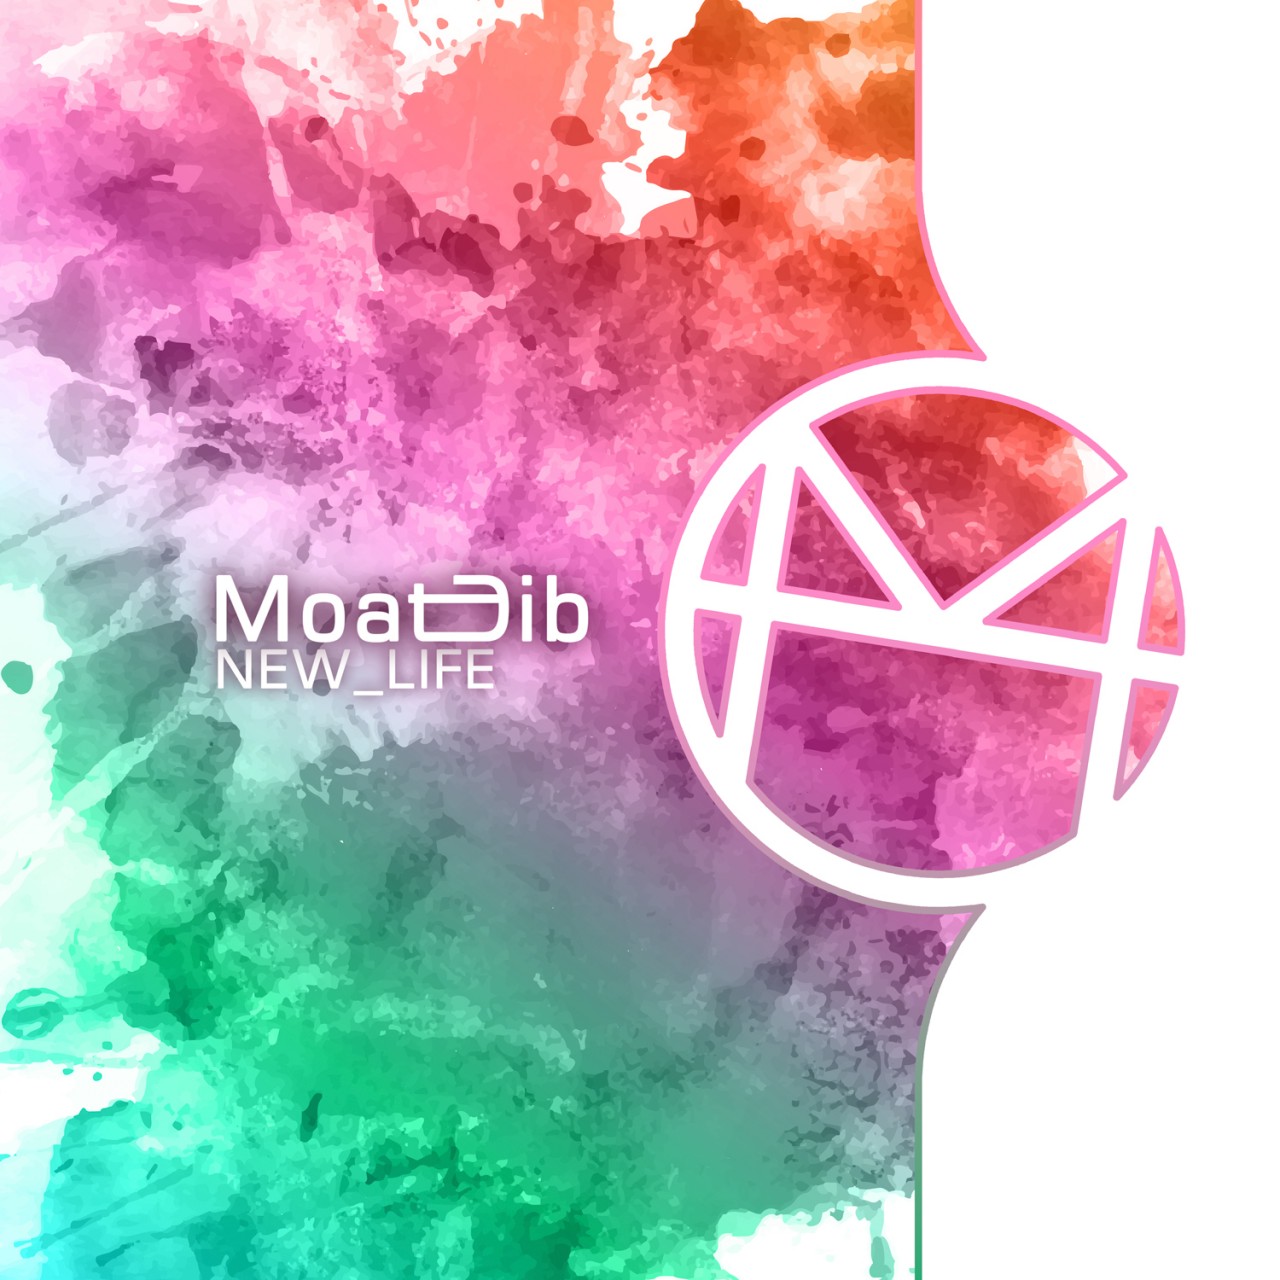 MoatDib_New_Life